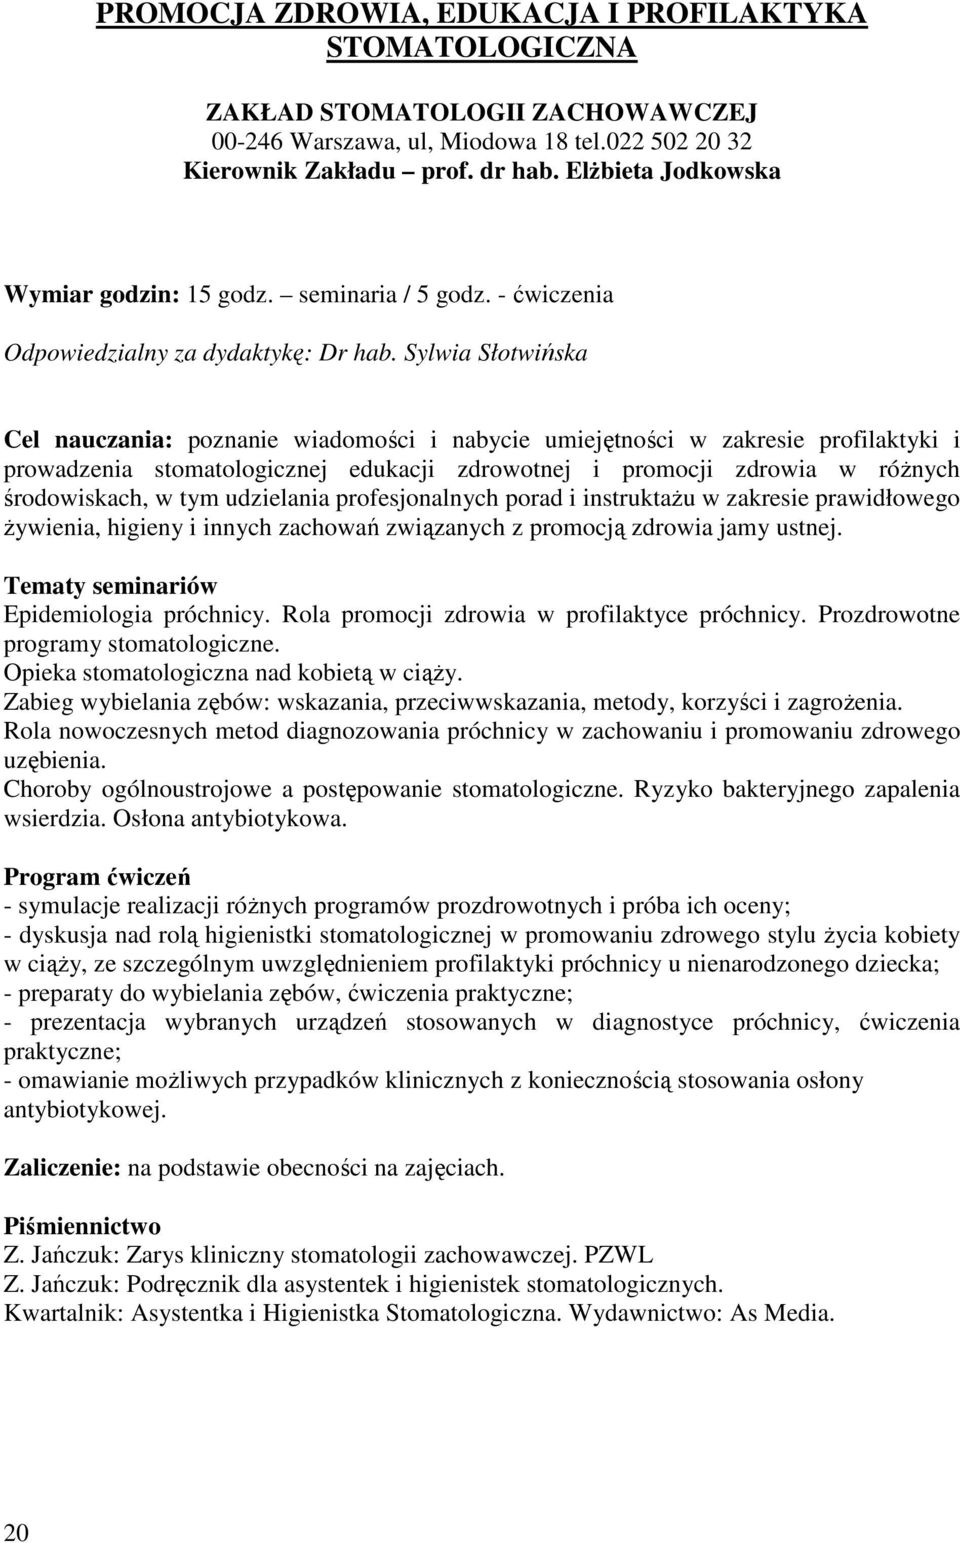 Sylwia Słotwińska Cel nauczania: poznanie wiadomości i nabycie umiejętności w zakresie profilaktyki i prowadzenia stomatologicznej edukacji zdrowotnej i promocji zdrowia w różnych środowiskach, w tym